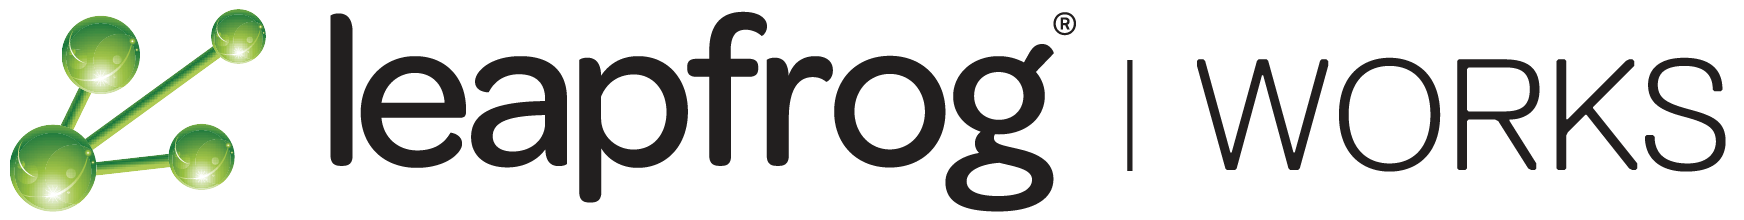 Leapfrog Works logo